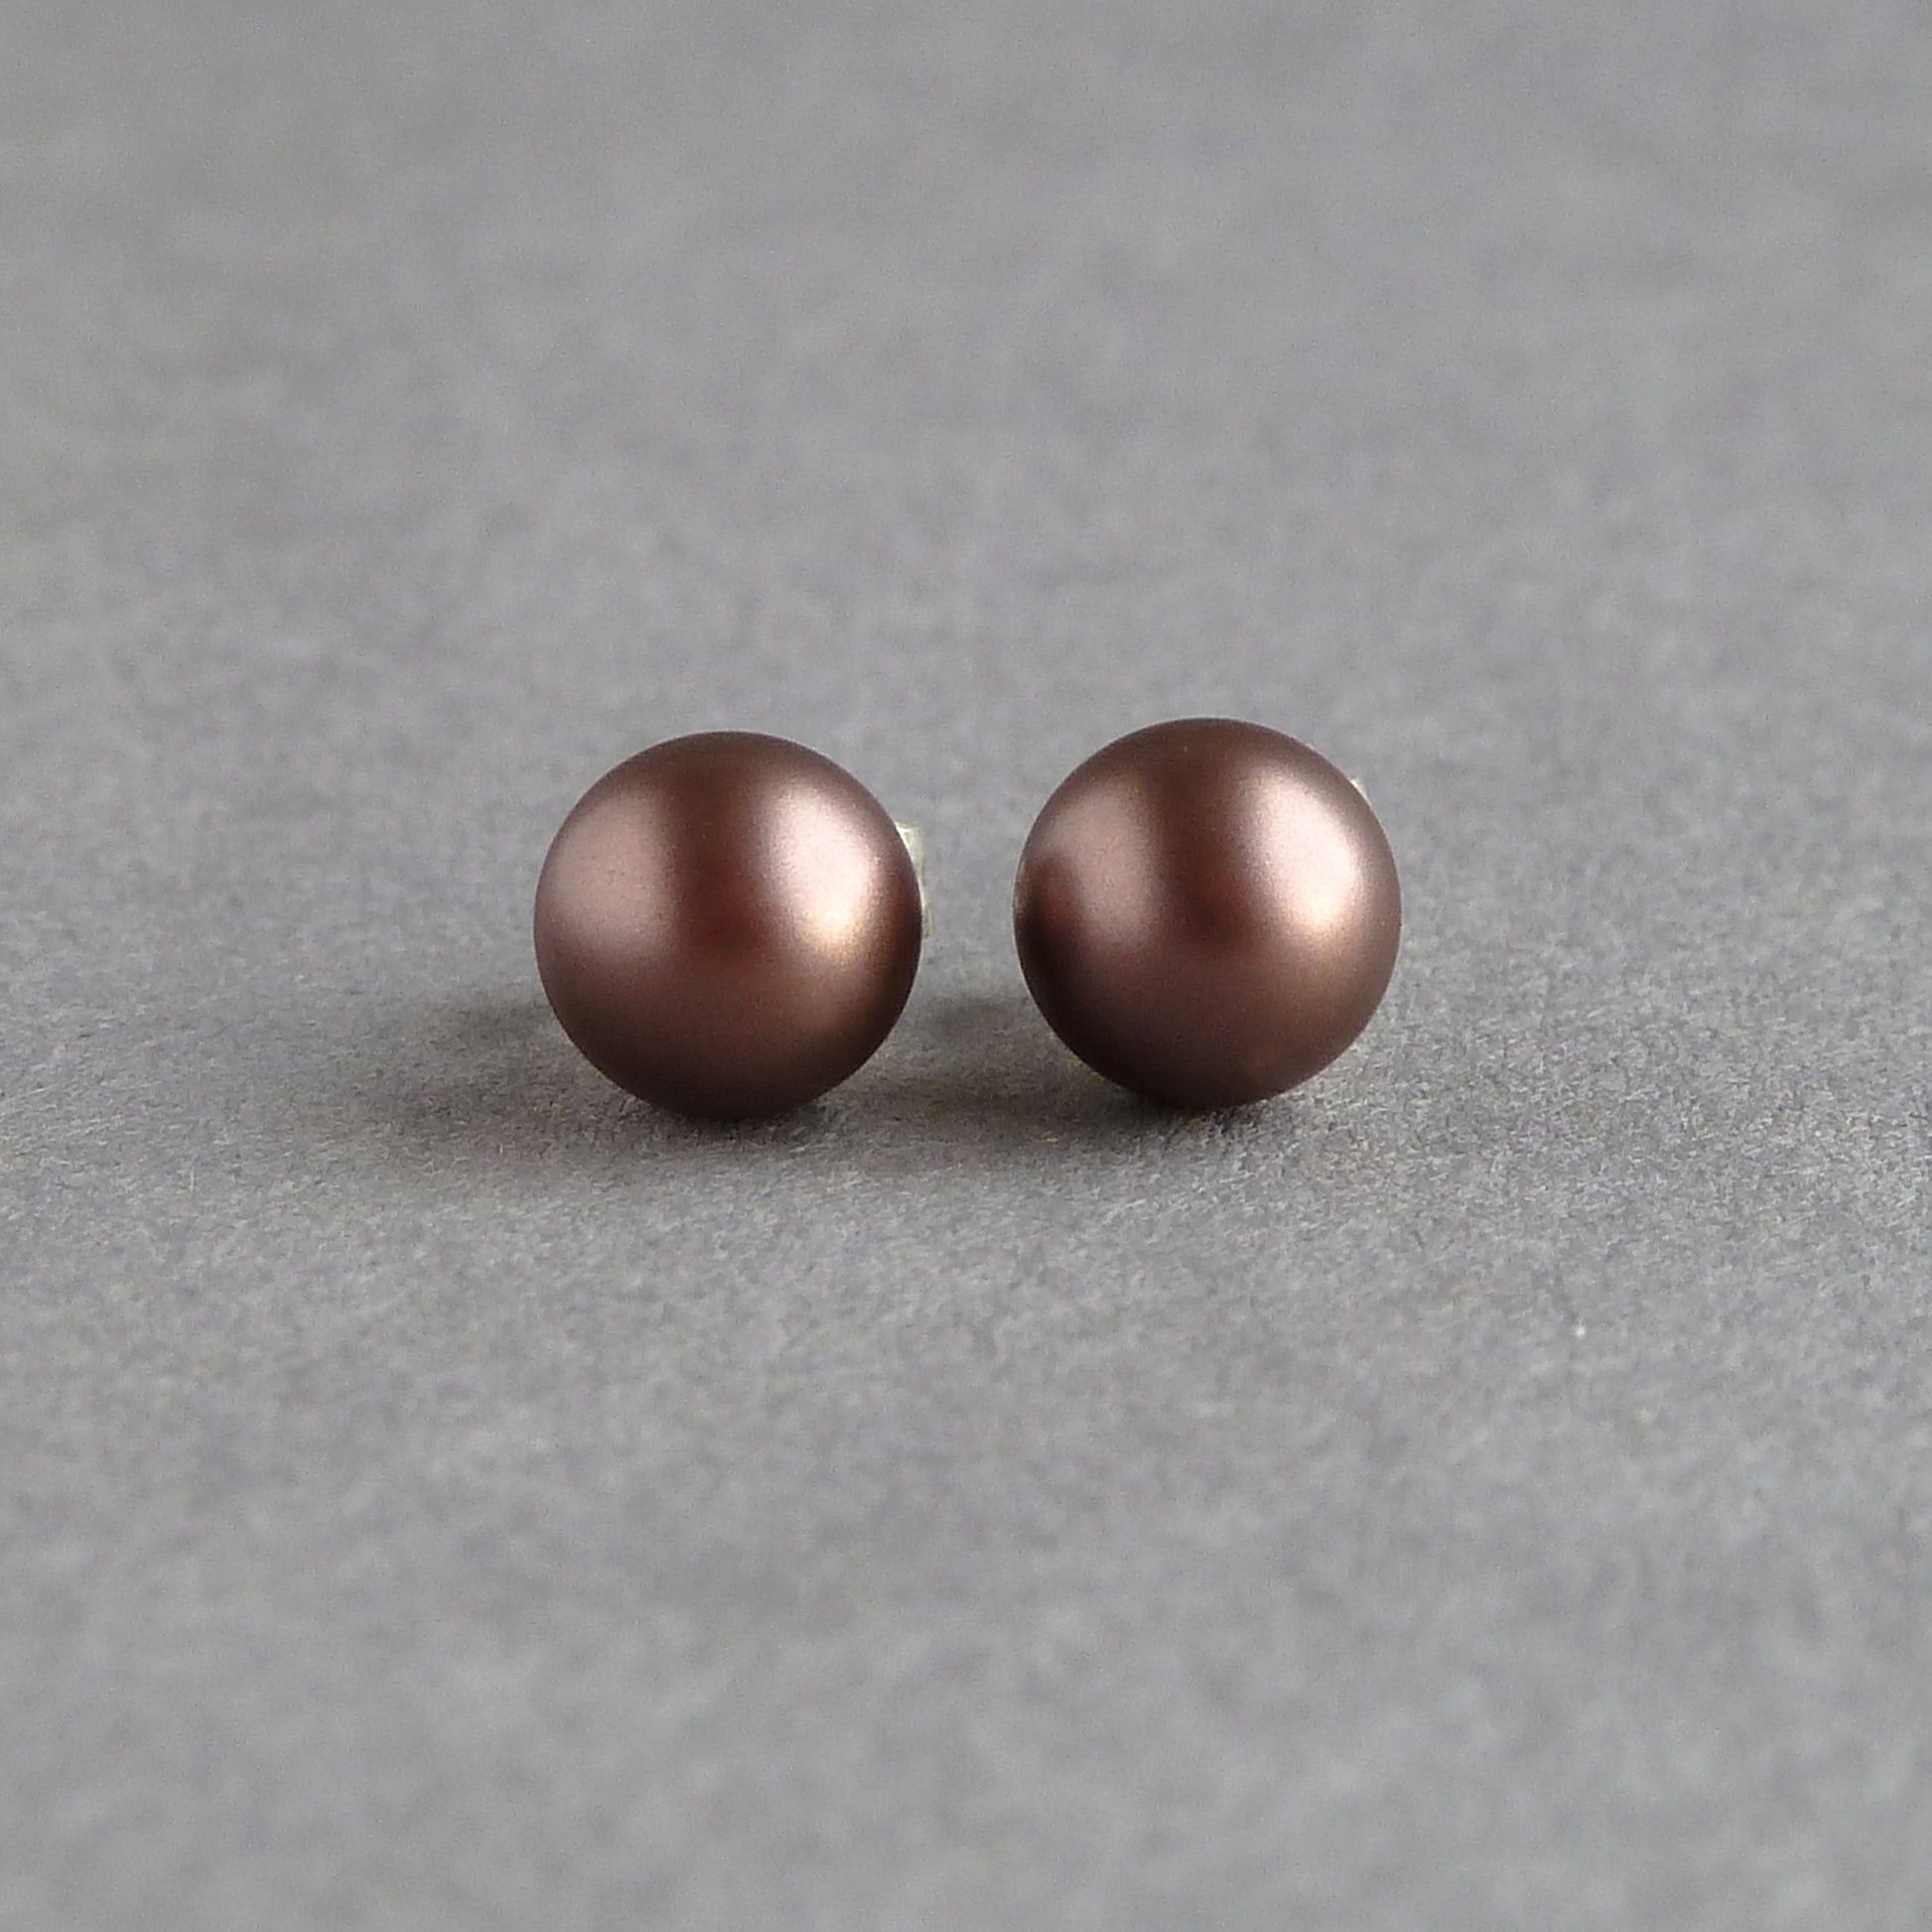 6mm velvet brown pearl stud earrings